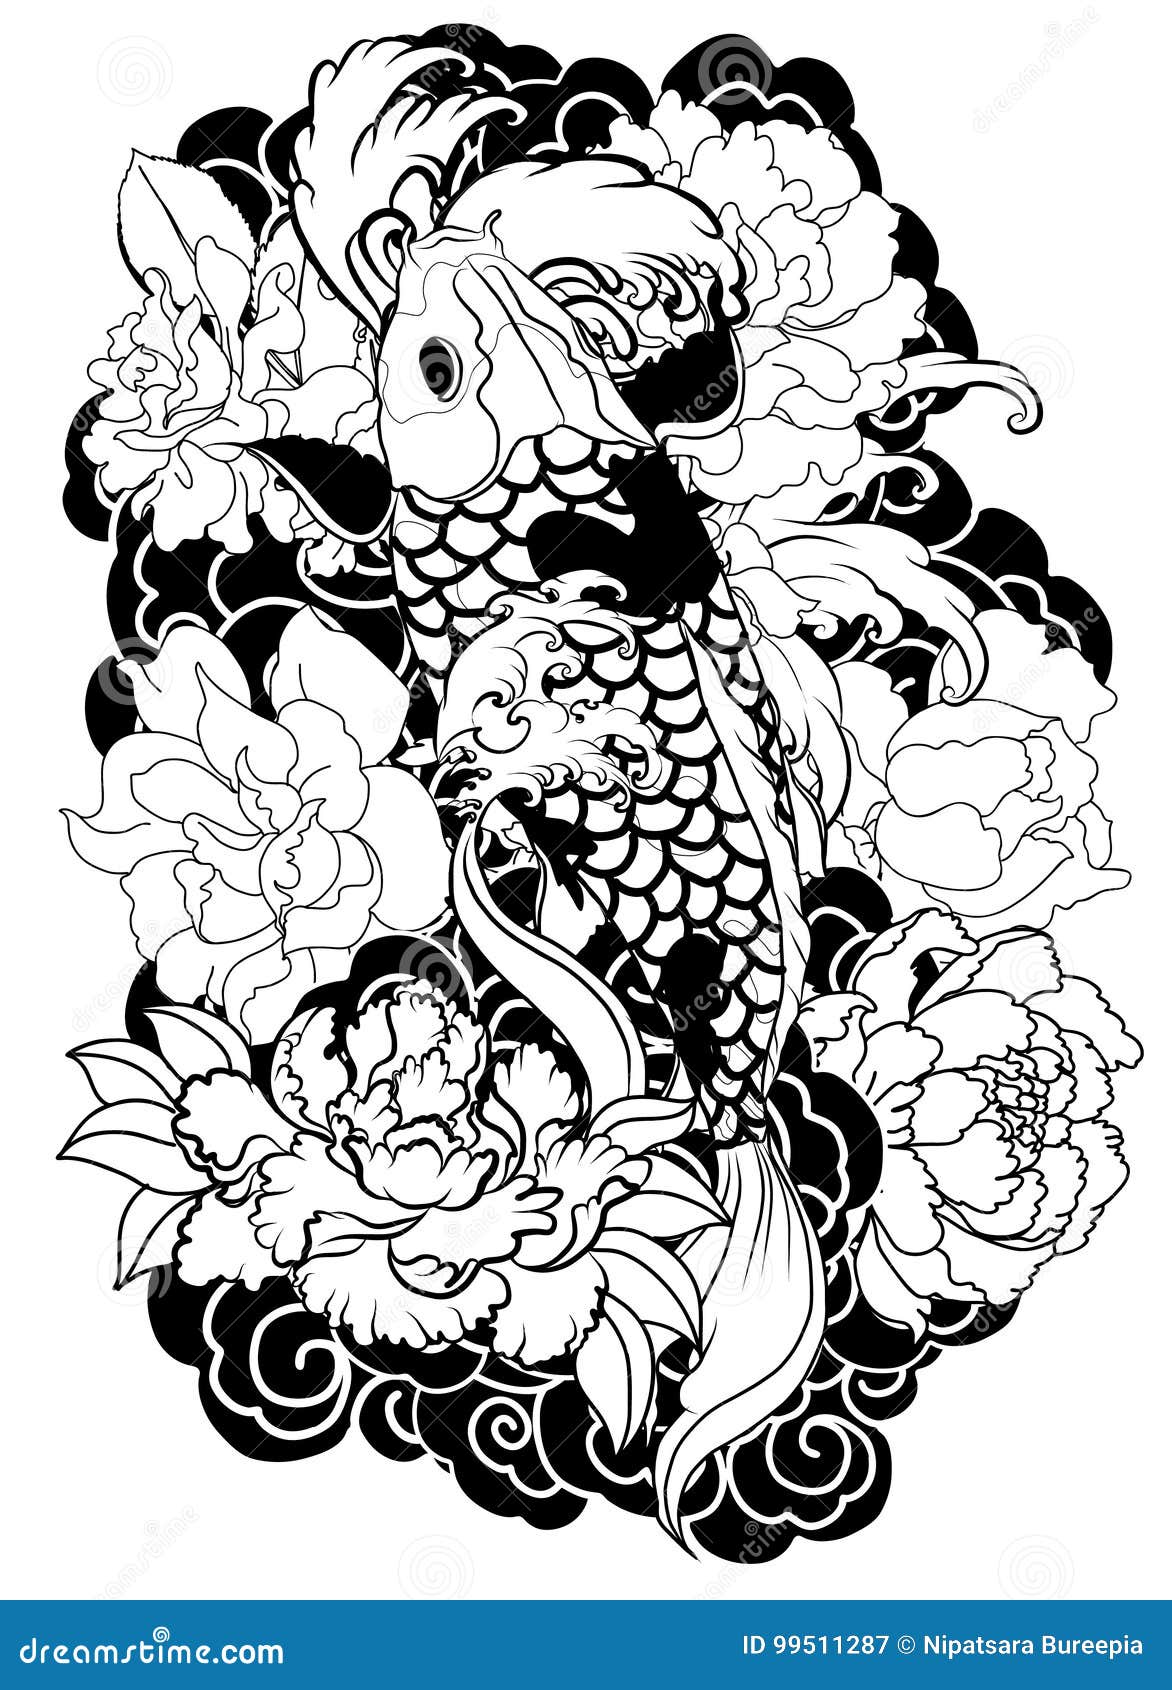 Watch Florin Zaharia tattoo this beautiful lotus flower design  Ratta  TattooRatta Tattoo